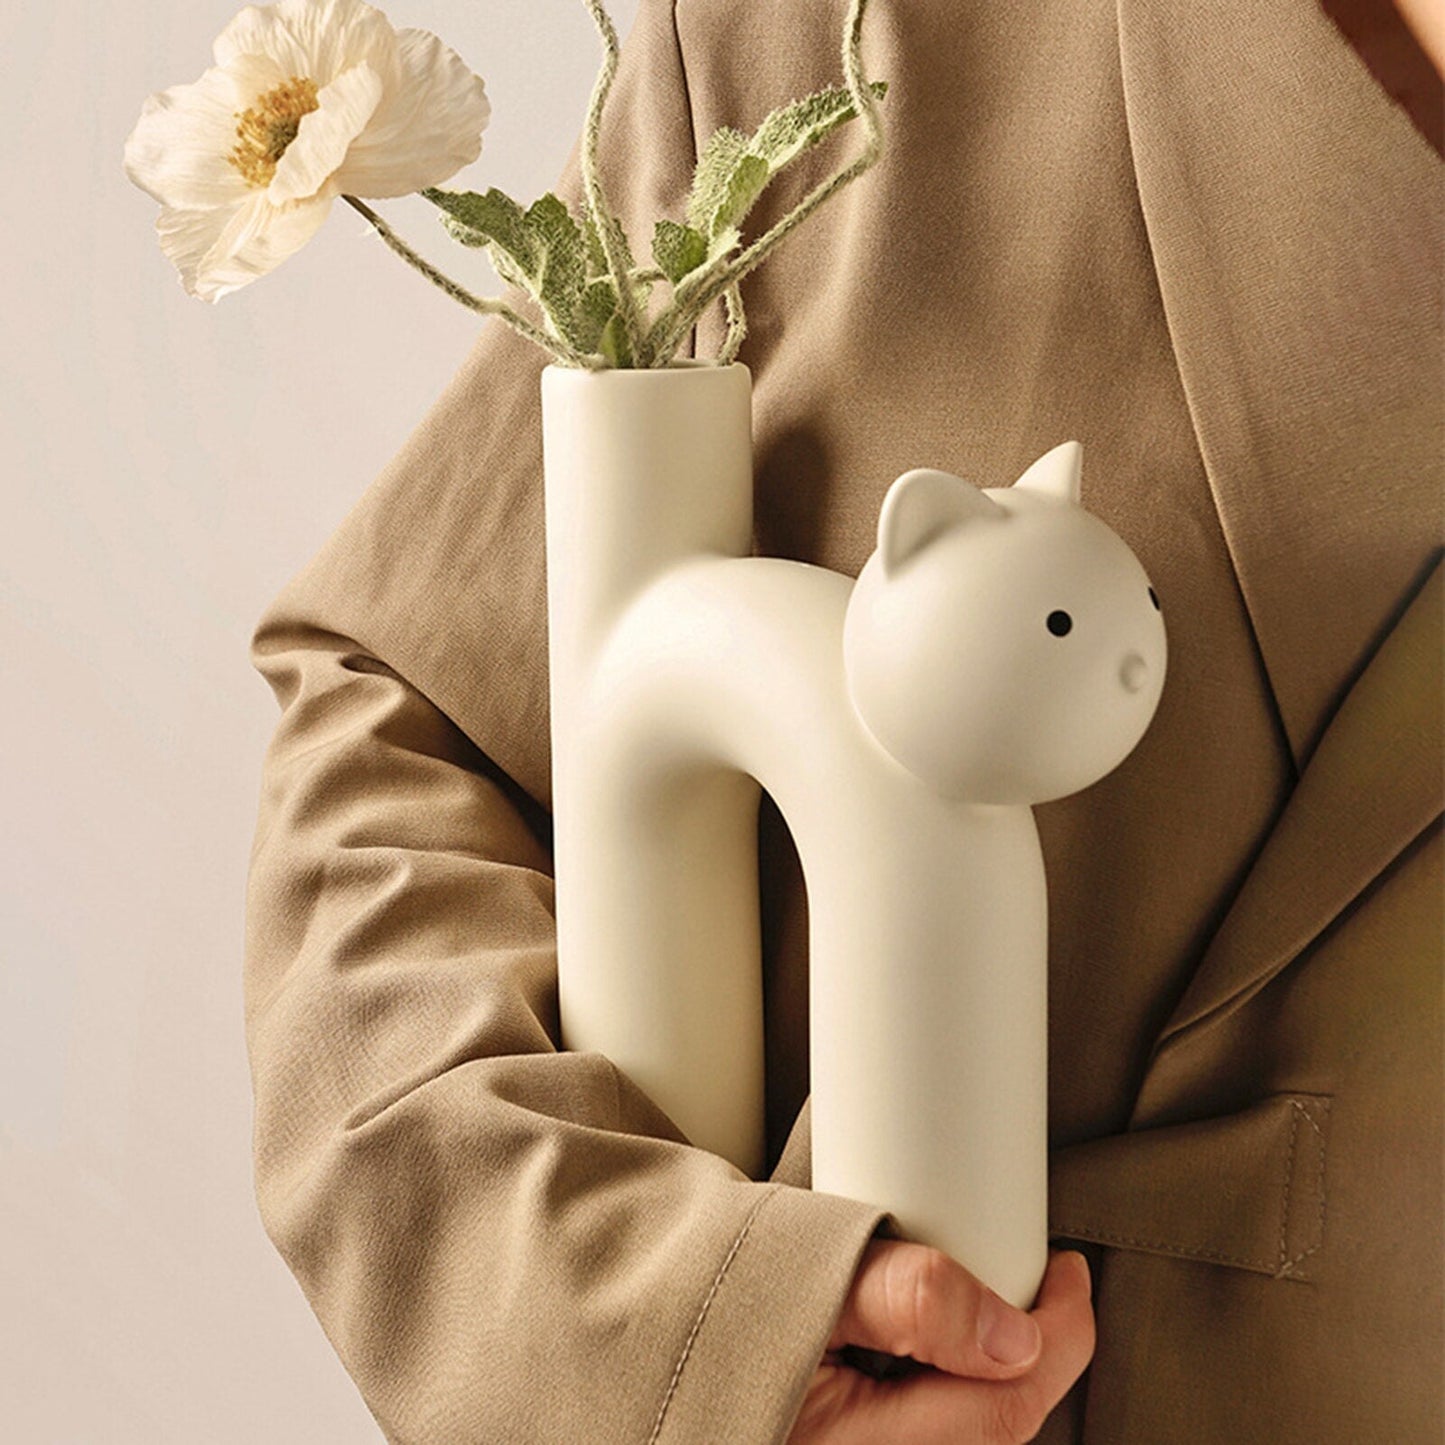 Vas seramik moden bentuk kucing tiub comel untuk ruang tamu pejabat perhiasan bunga nordik periuk bunga kerajinan bunga kering